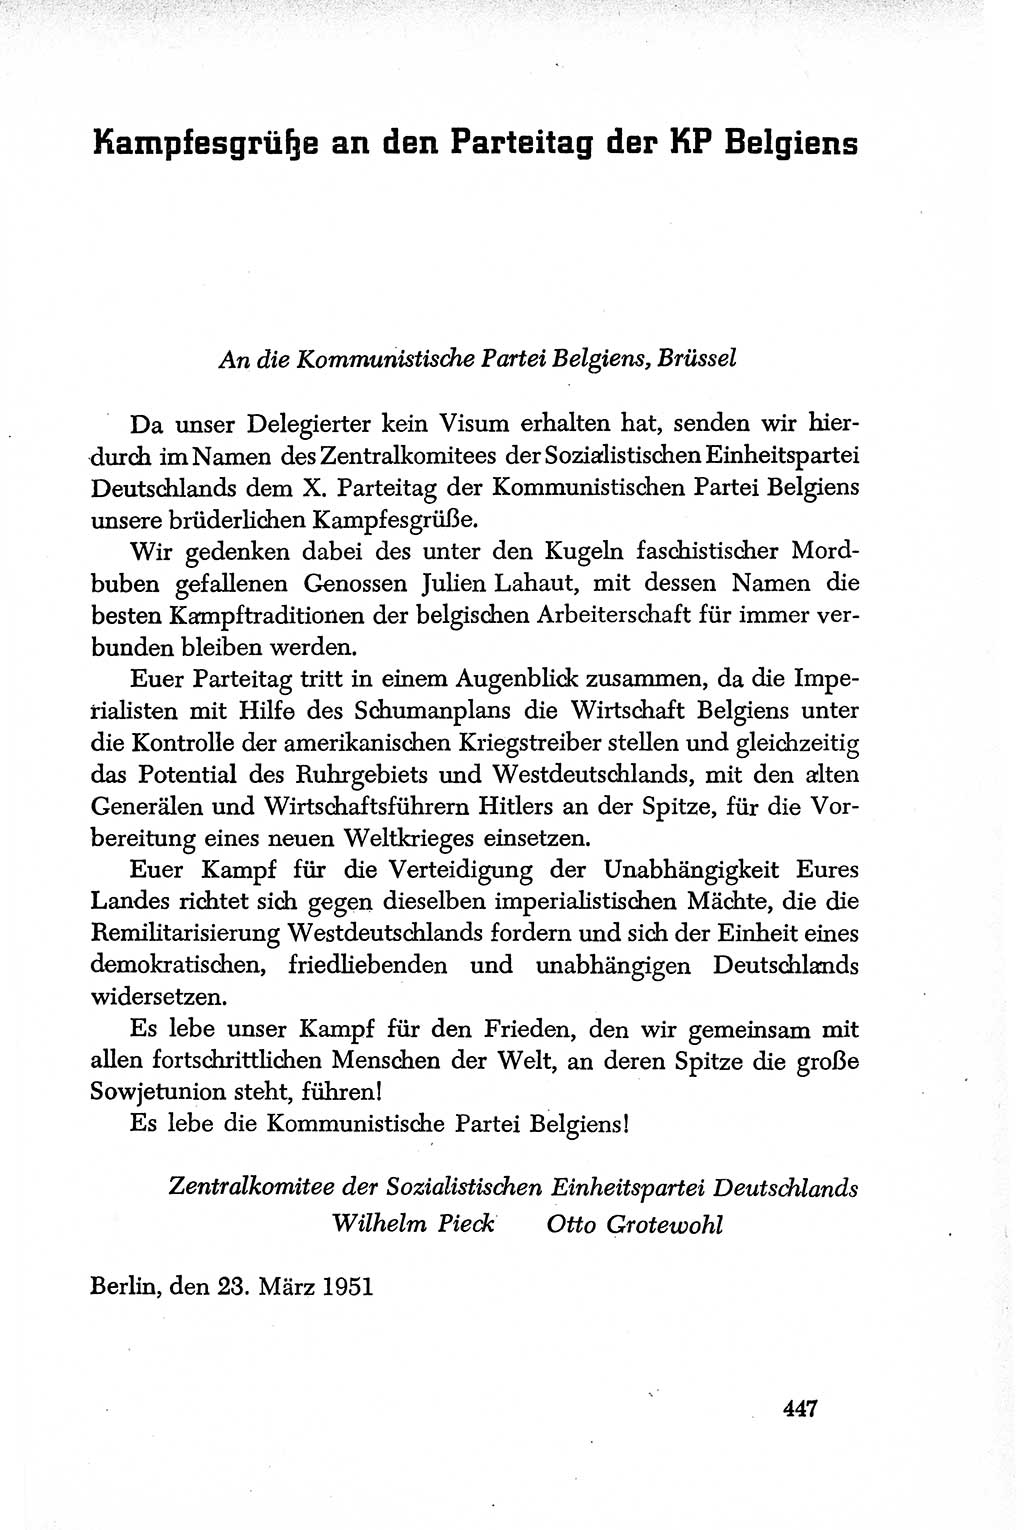 Dokumente der Sozialistischen Einheitspartei Deutschlands (SED) [Deutsche Demokratische Republik (DDR)] 1950-1952, Seite 447 (Dok. SED DDR 1950-1952, S. 447)